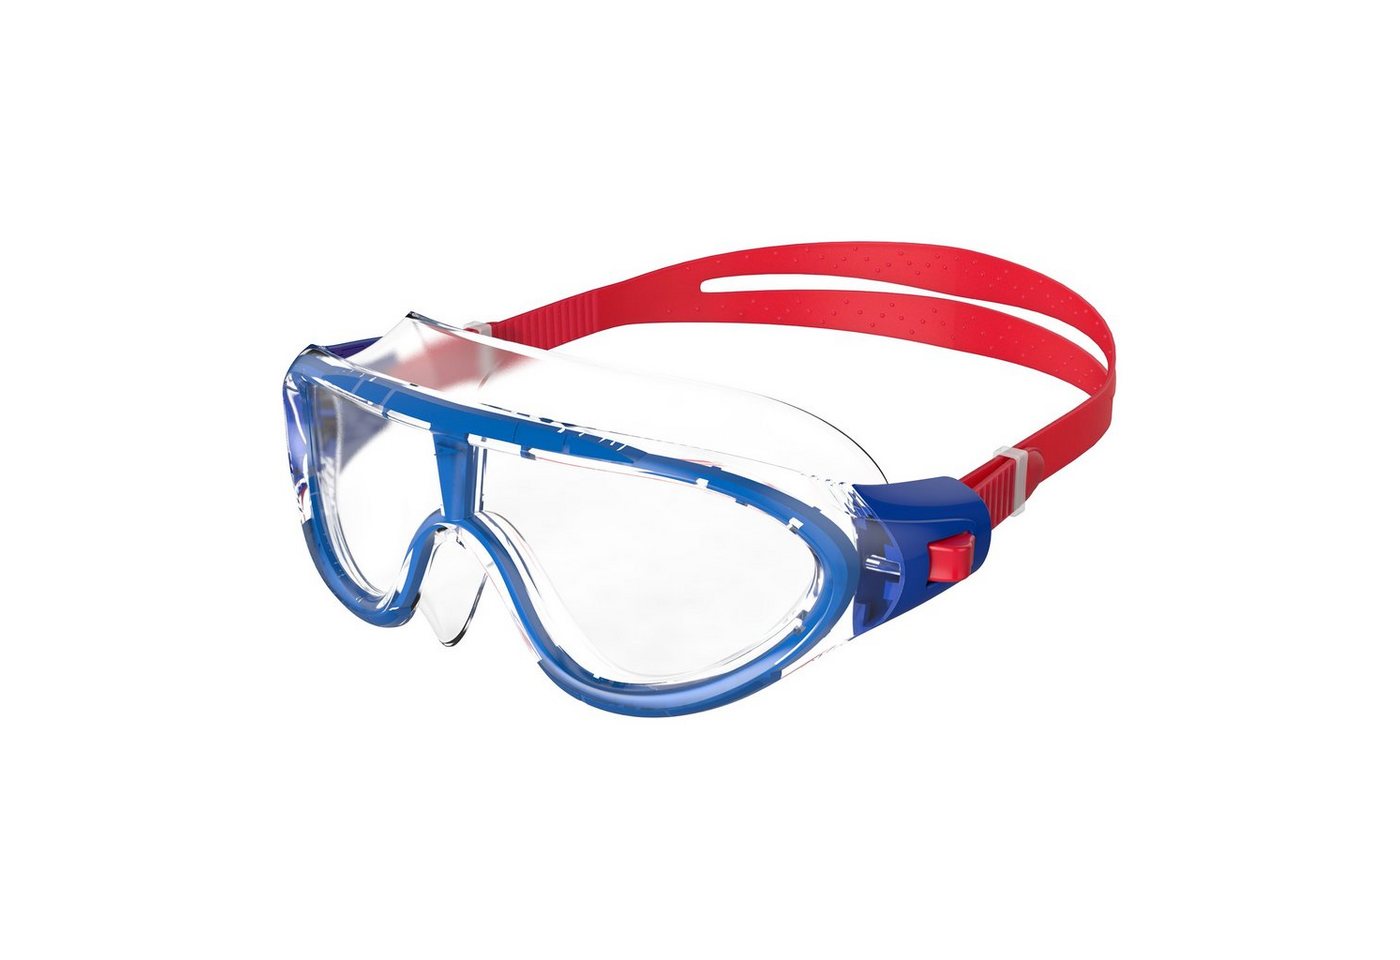 Speedo Schwimmbrille Speedo Biofuse Rift Junior Lava Red/Beautiful Blue/Clear, Hoher ragekomfort durch flexiblen Rahmen von Speedo